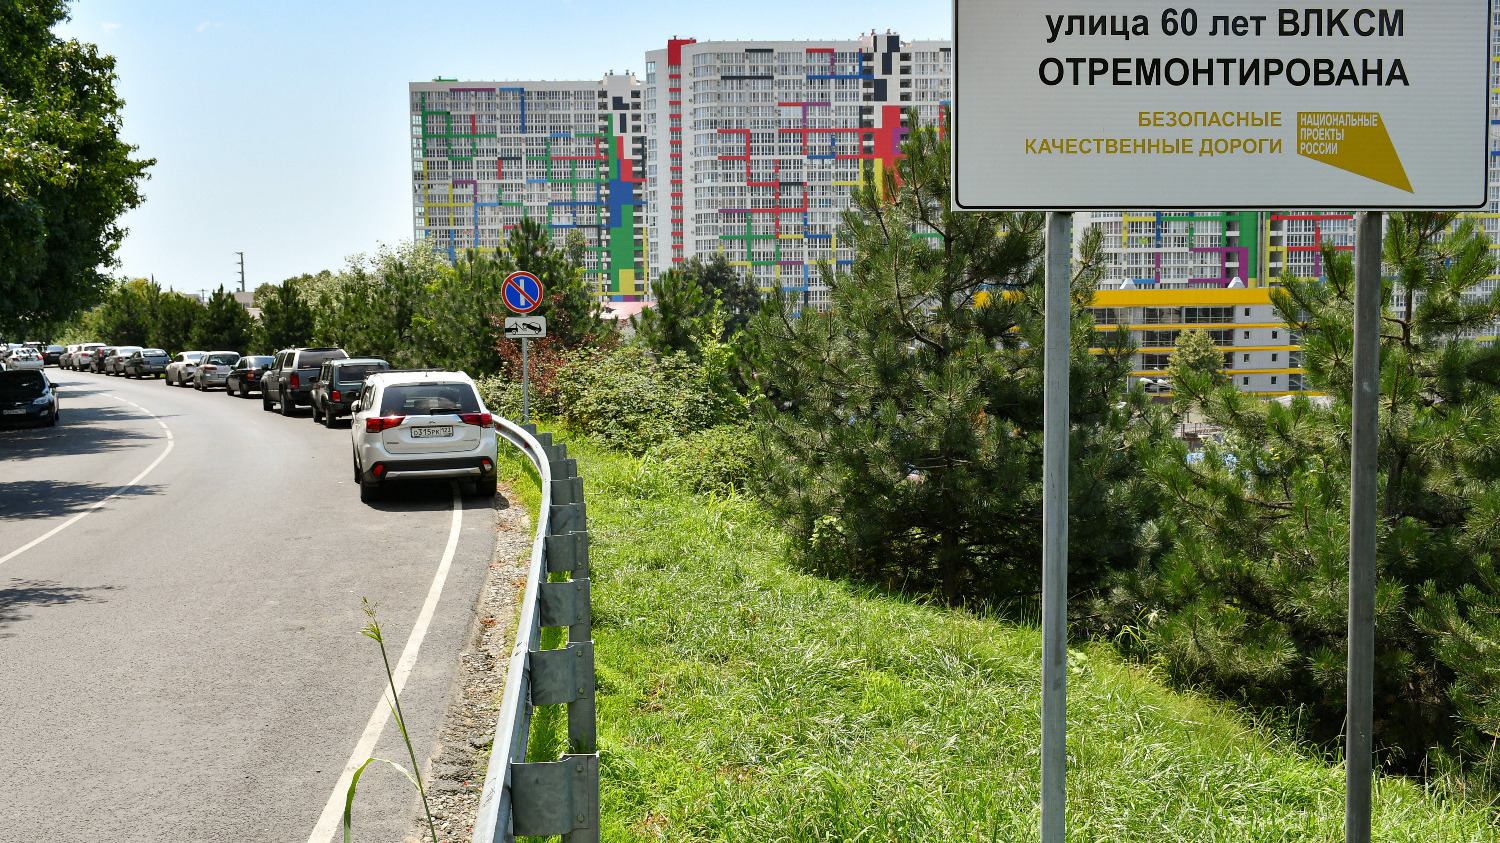 Под контролем мэра Алексея Копайгородского за пять лет отремонтировано 326 участков улиц  в рамках нацпроекта «Безопасные качественные дороги»